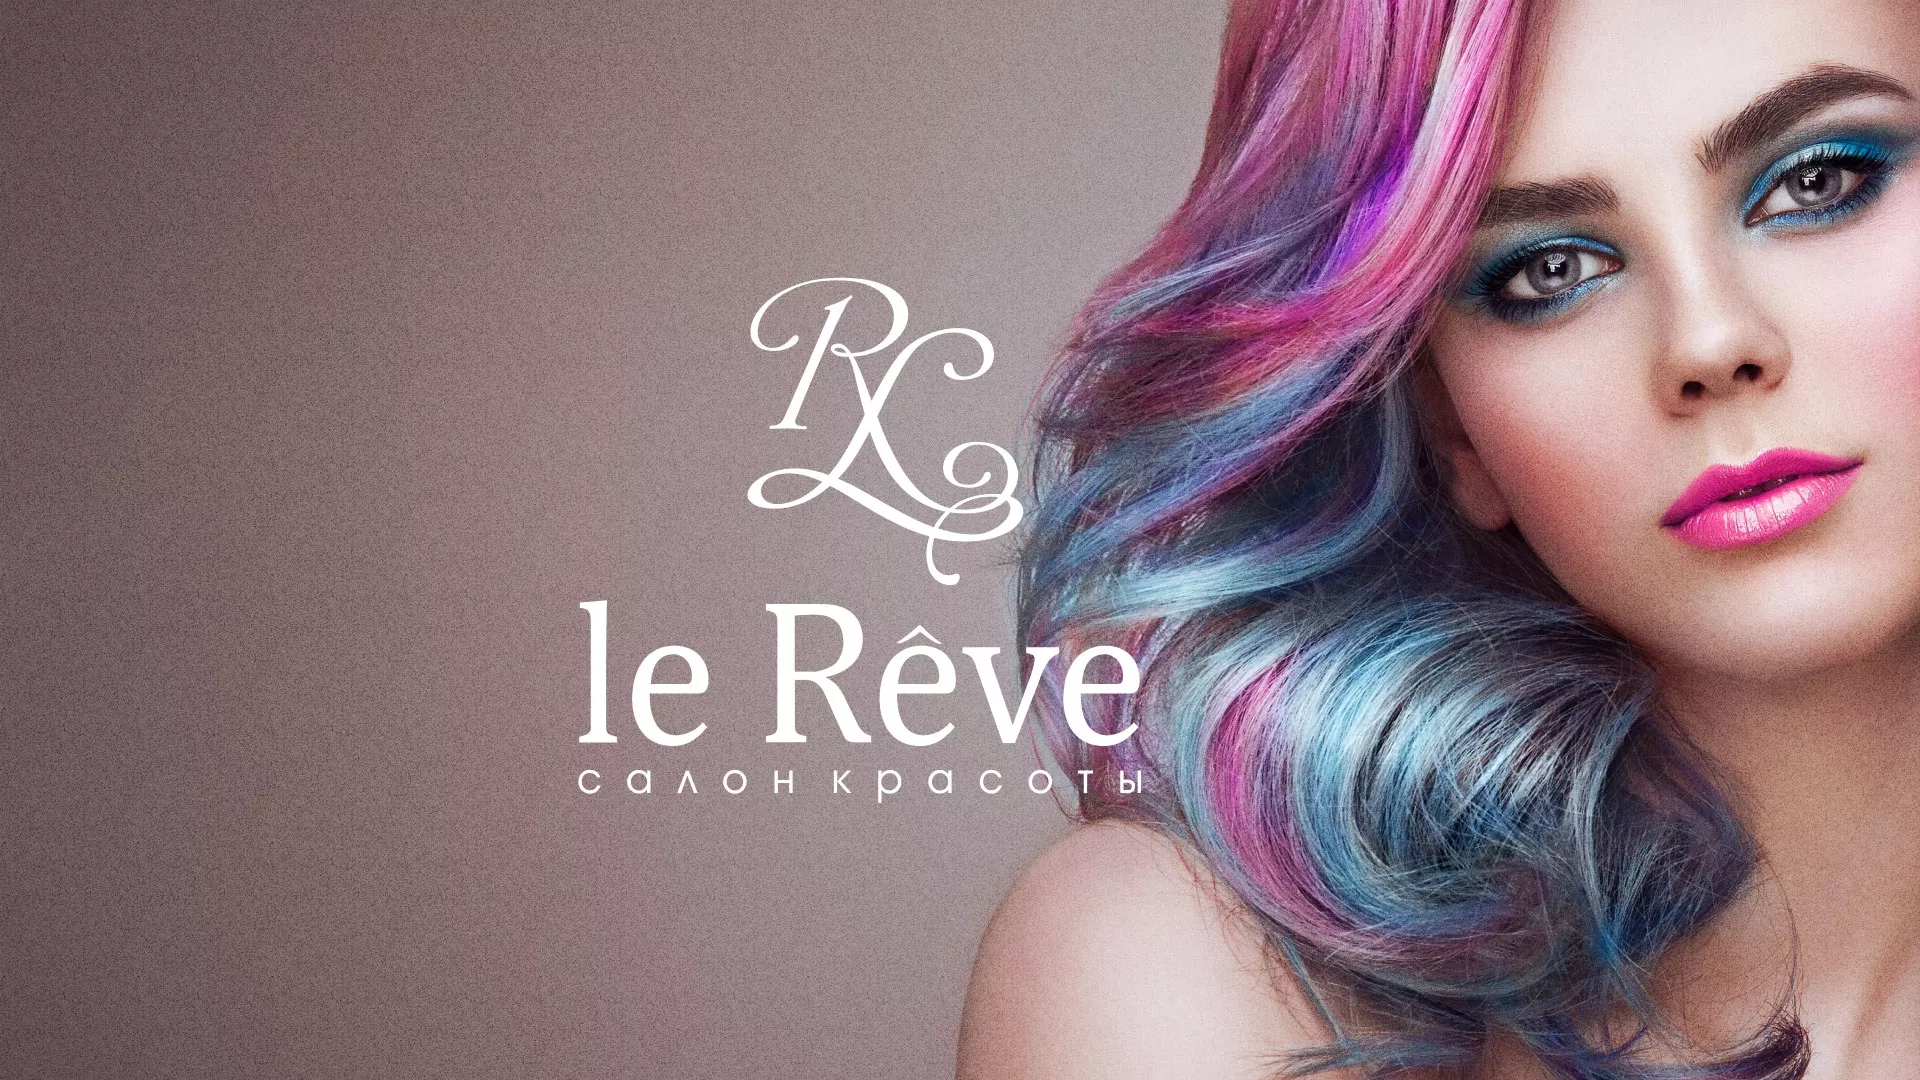 Создание сайта для салона красоты «Le Reve» в Мытищах